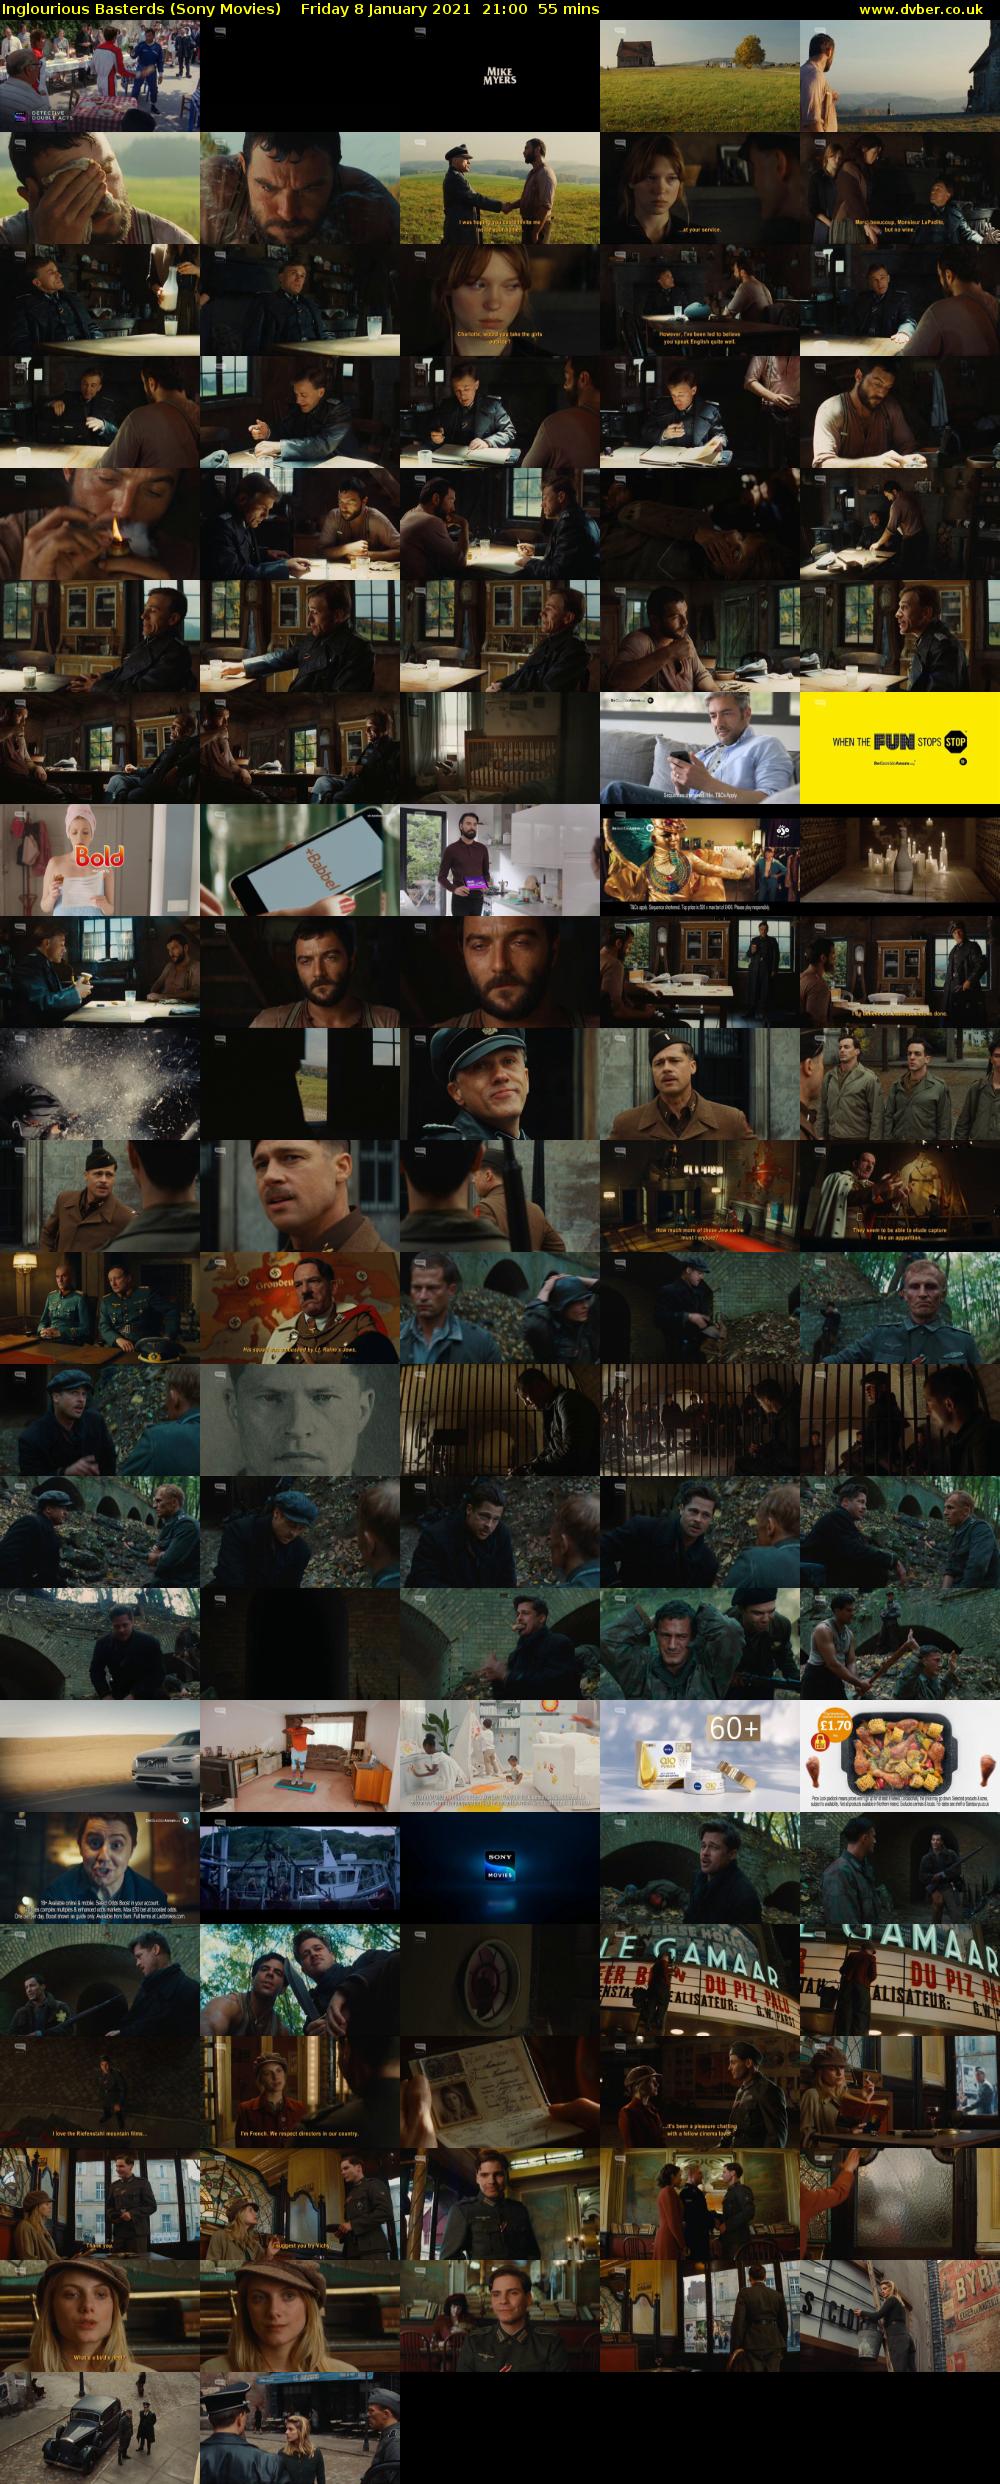 Inglourious Basterds (Sony Movies) Friday 8 January 2021 21:00 - 21:55